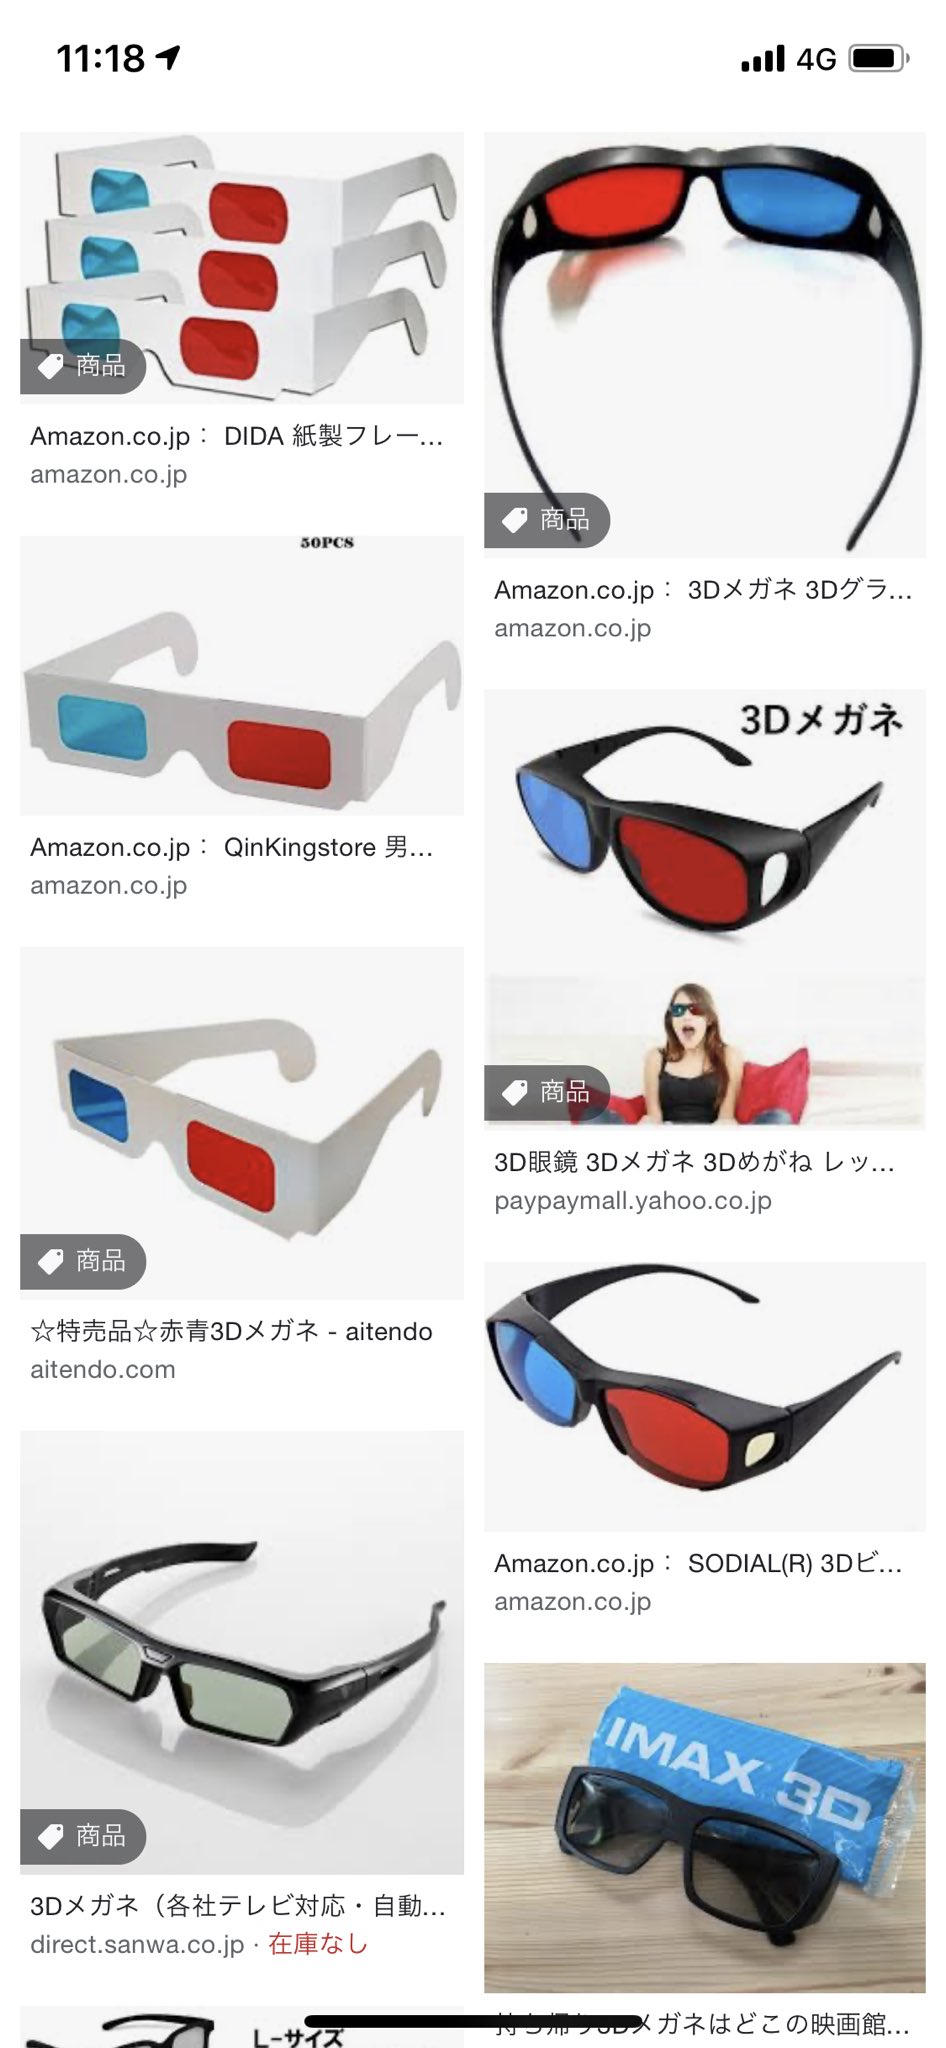 So 赤青の3dメガネってどこで売ってるの 新宿のハンズで無いって言われたんだけど T Co 4x7xcomsi8 Twitter